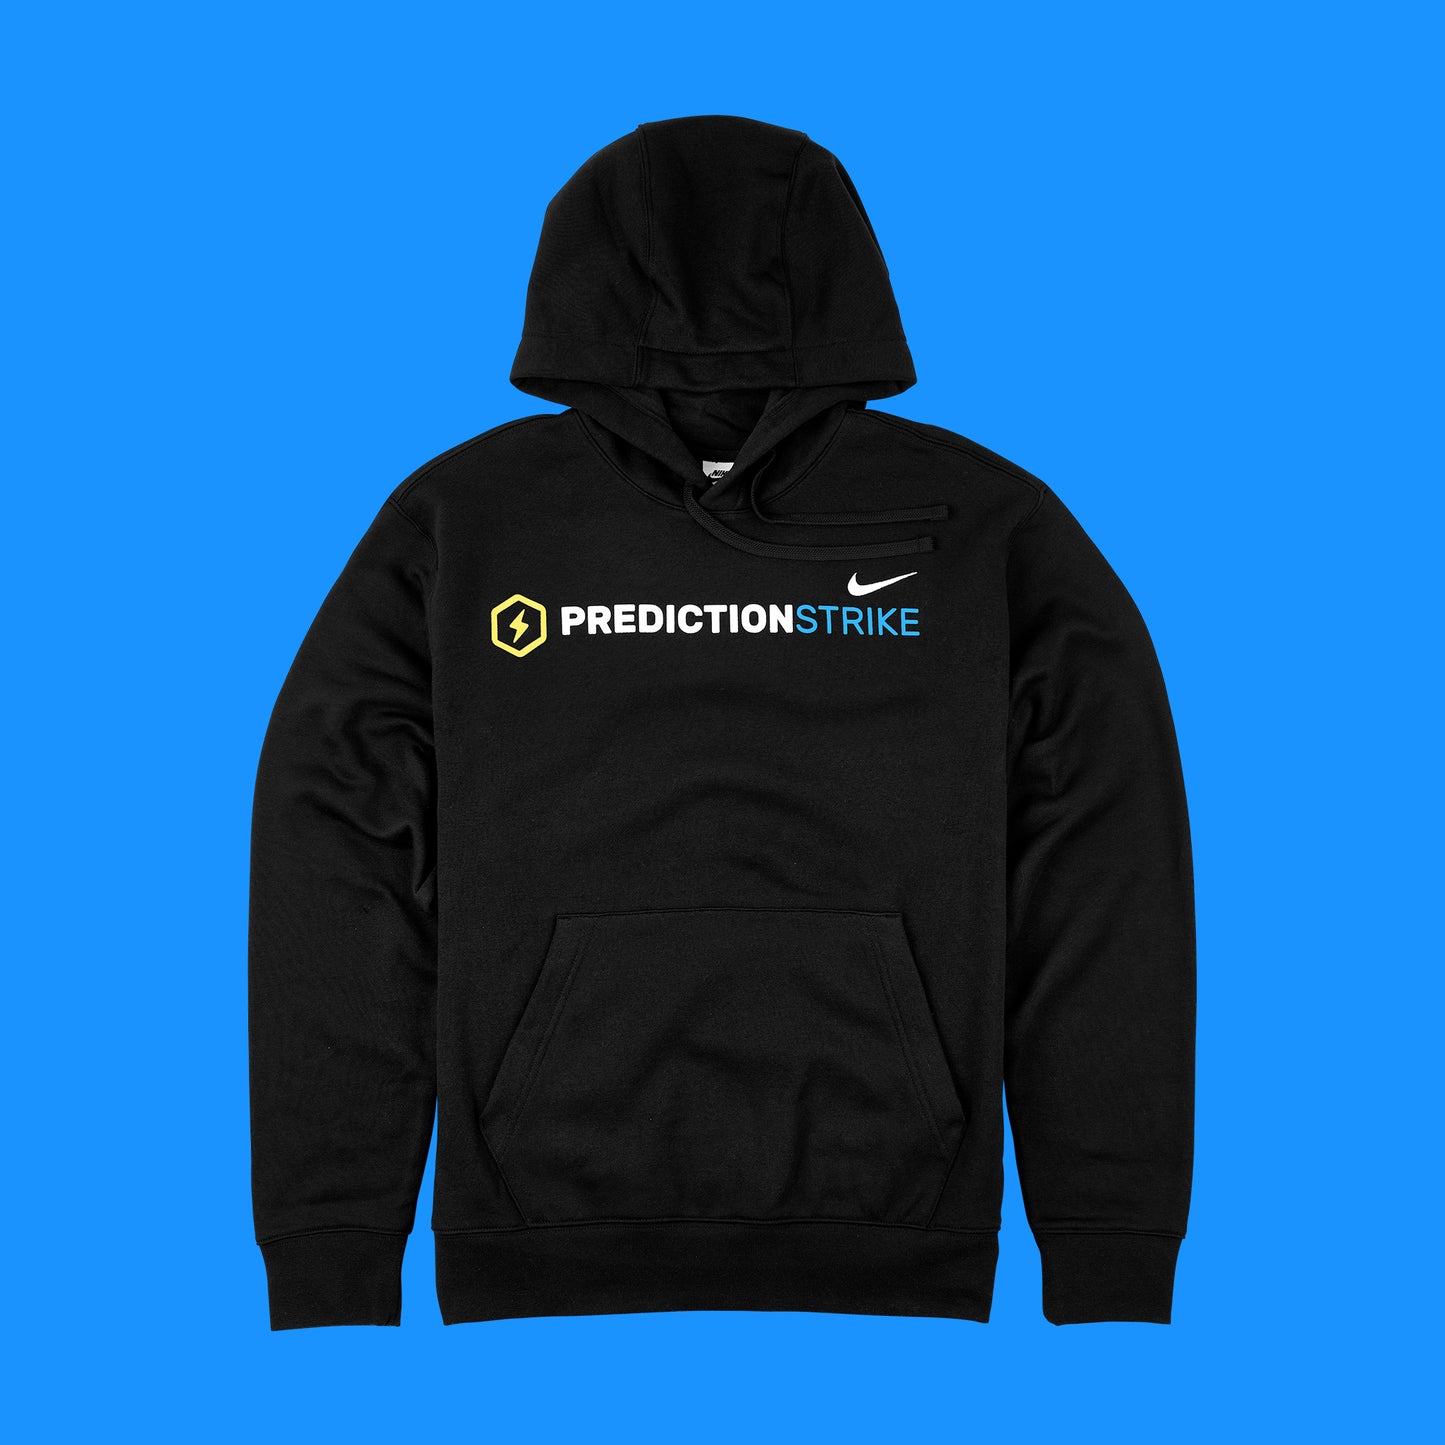 PredictionStrike logo printed on premium, black Nike Club Fleece Pullover Hoodie